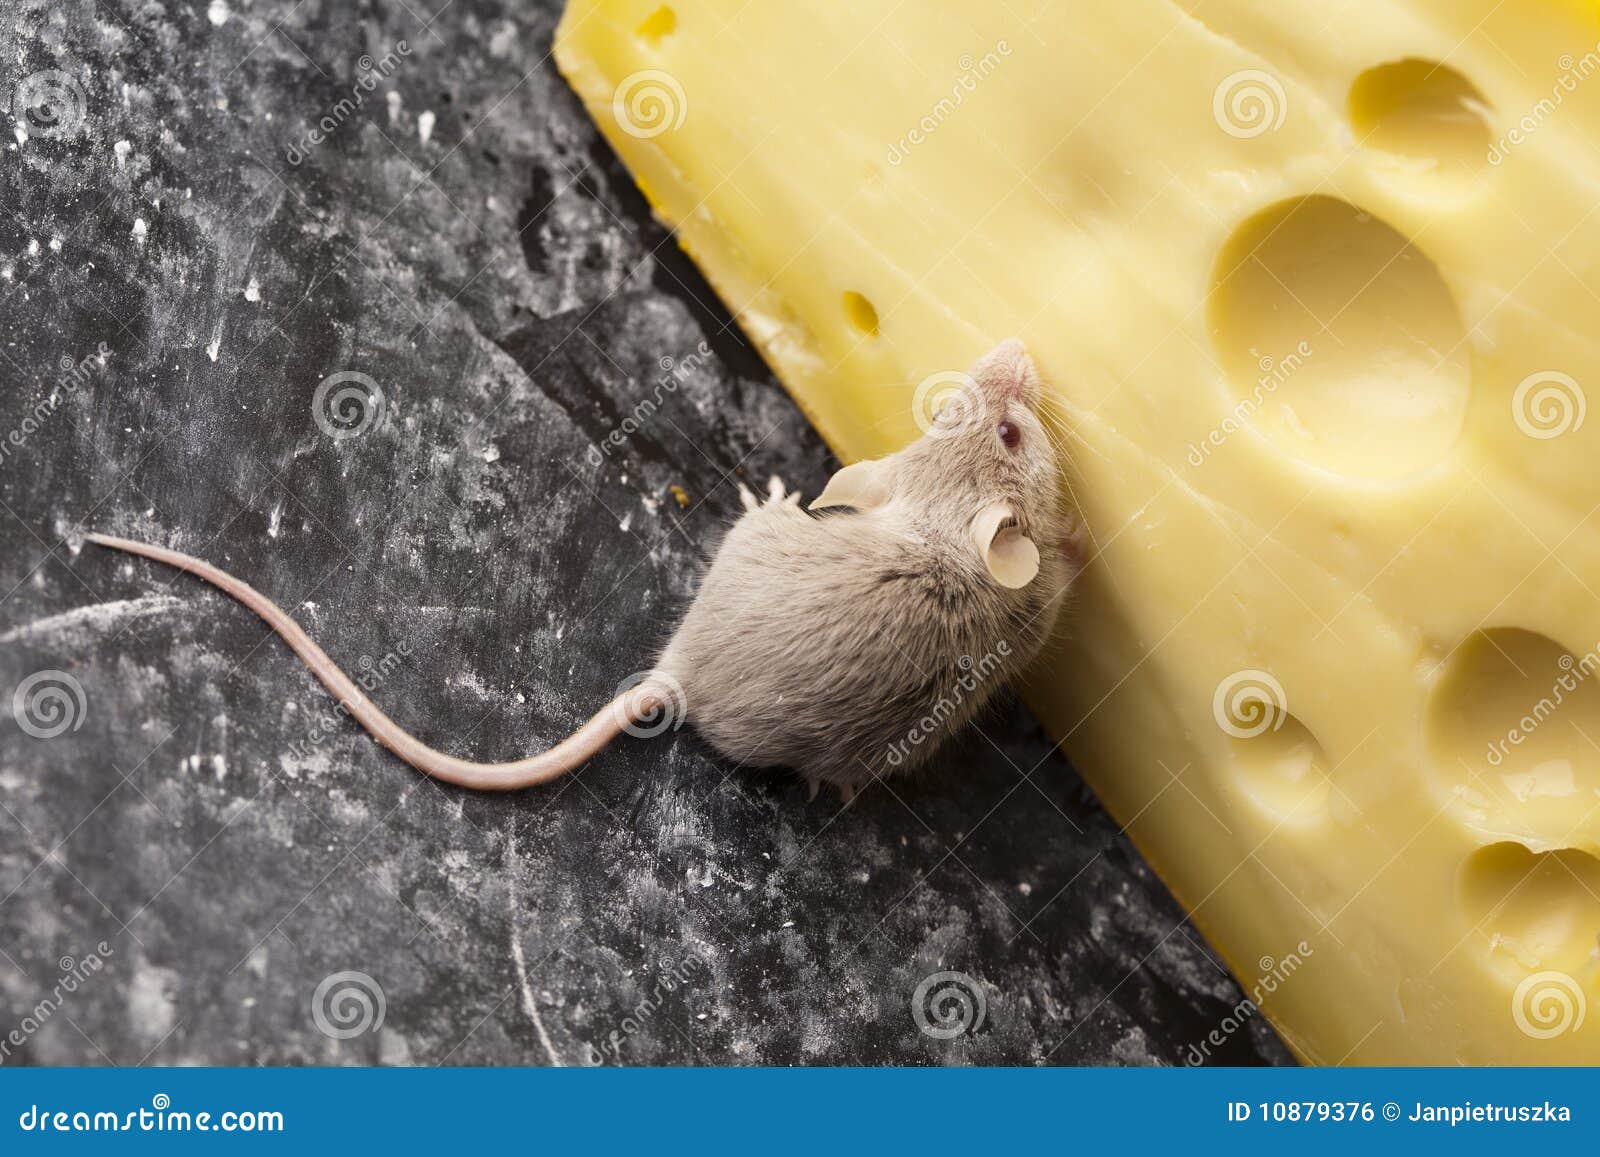 Про мышей и сыр. Мышь+сыр. Мышка с сыром. Мышка с сыром на камешке. Мышь с сыром фото.